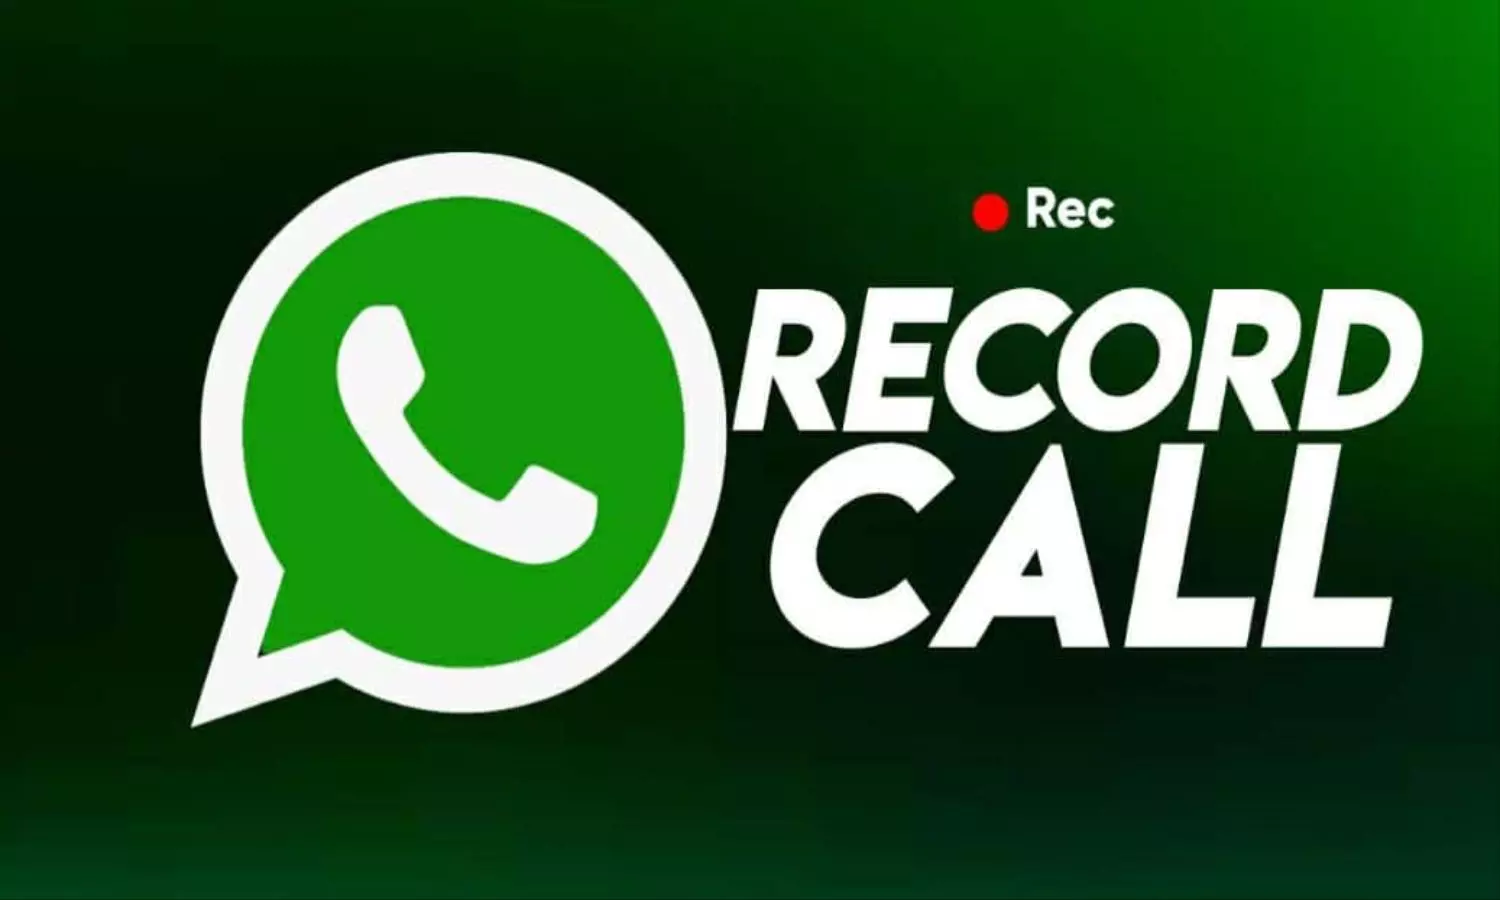 WhatsApp Call Record: इस तरह से कर सकते हैं विडियो कॉल रिकॉर्ड, बस फॉलो करें ये स्टेप्स